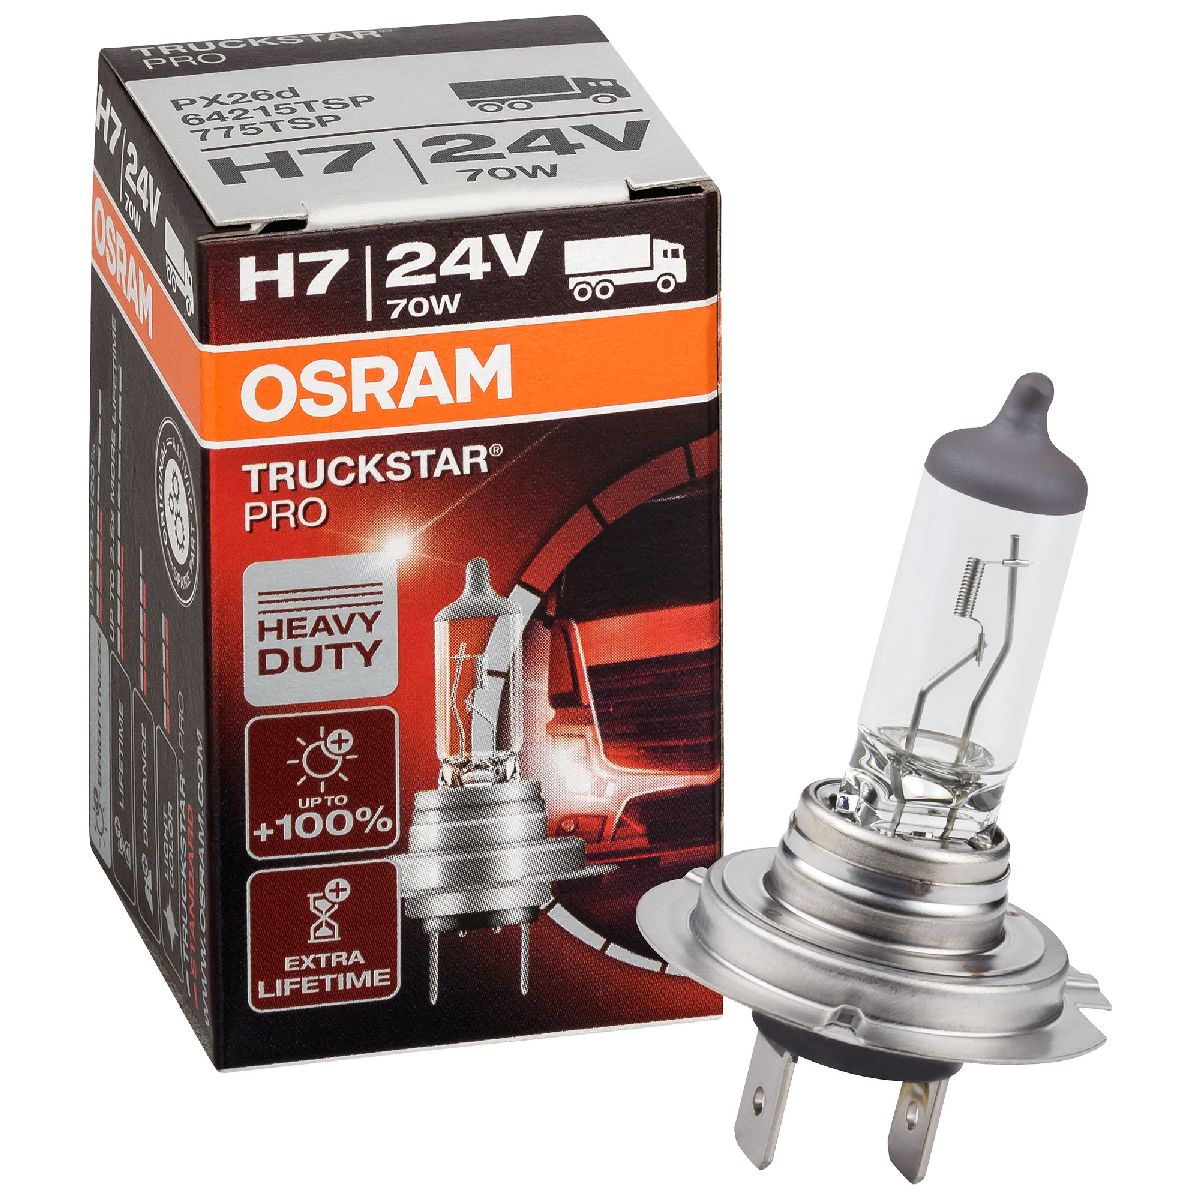 Auto-Lampen-Discount - H7 Lampen und mehr günstig kaufen - OSRAM Glühlampe  H7 Truckstar Pro +120% 24V 70W Heavy Duty LKW 64215TSP